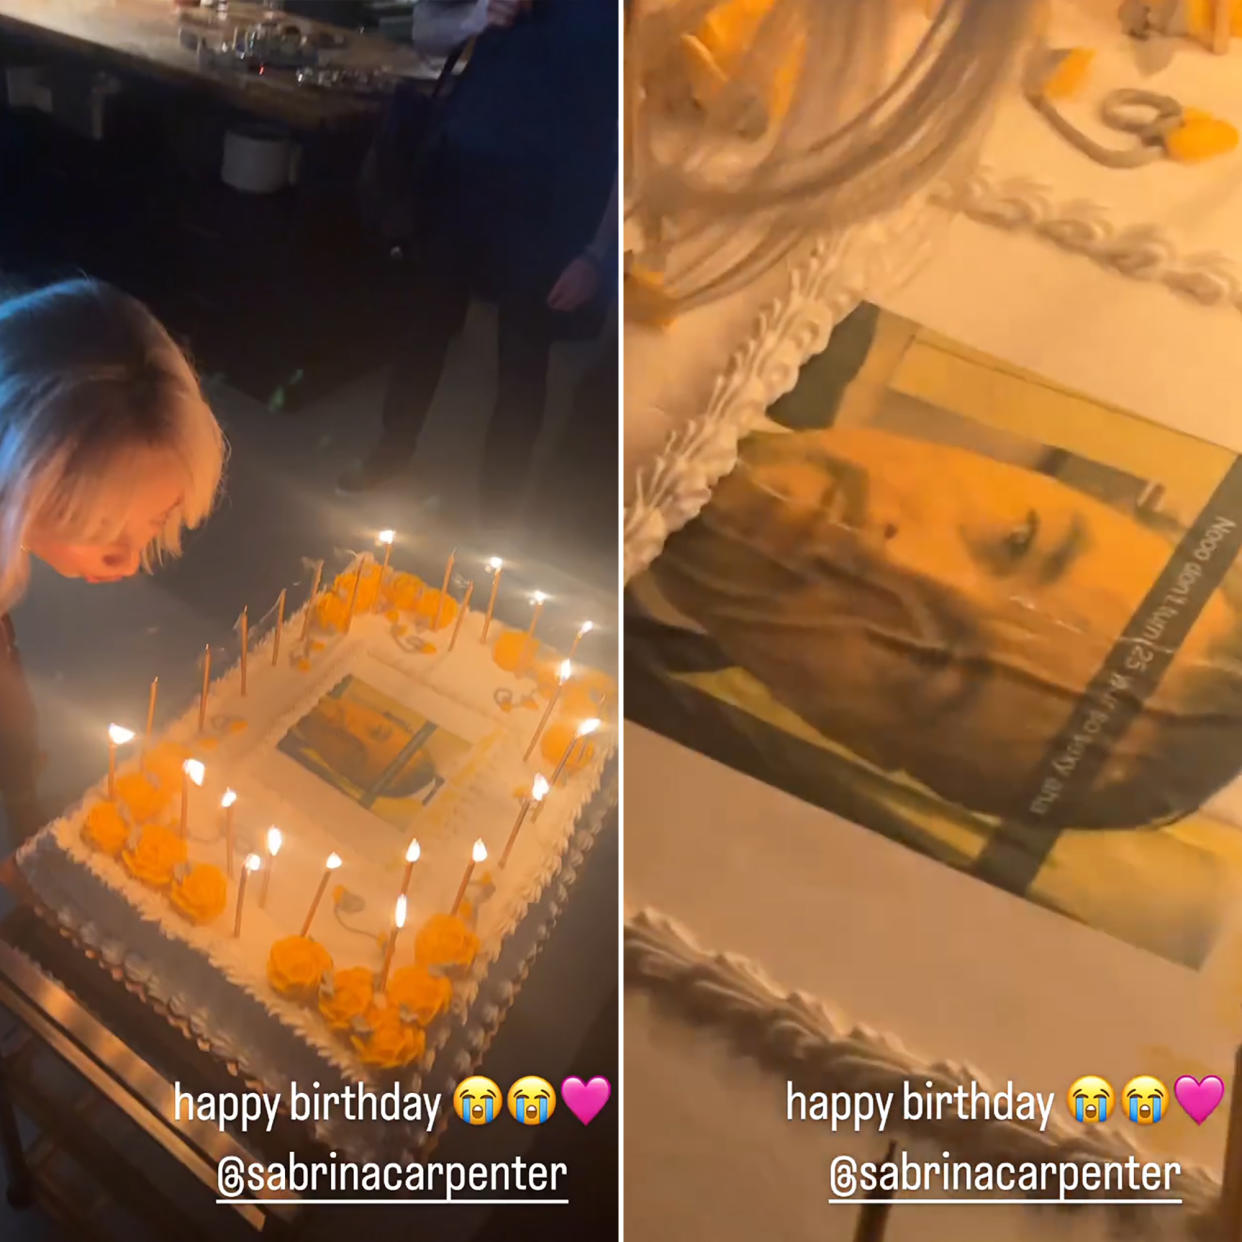 Sabrina Carpenter’s 25th Birthday Cake Features a Leonardo DiCaprio Meme